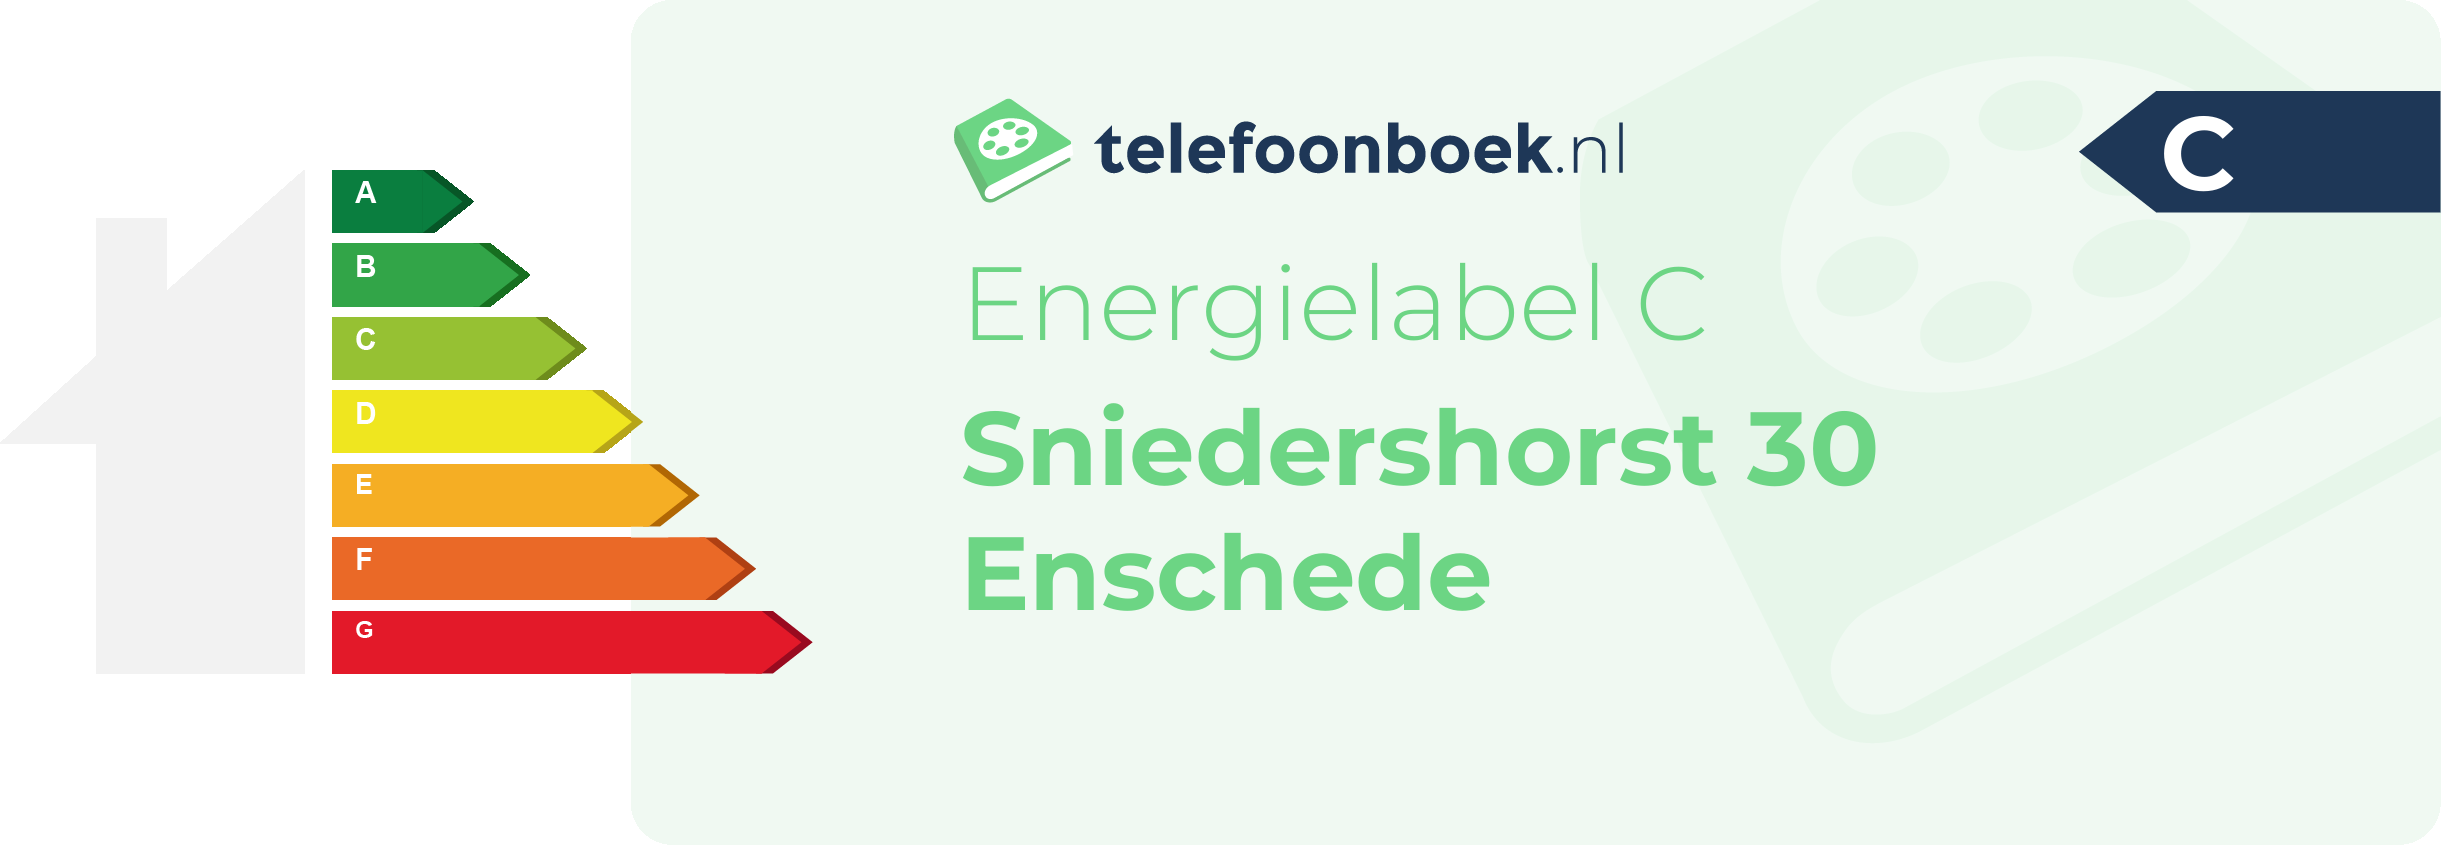 Energielabel Sniedershorst 30 Enschede